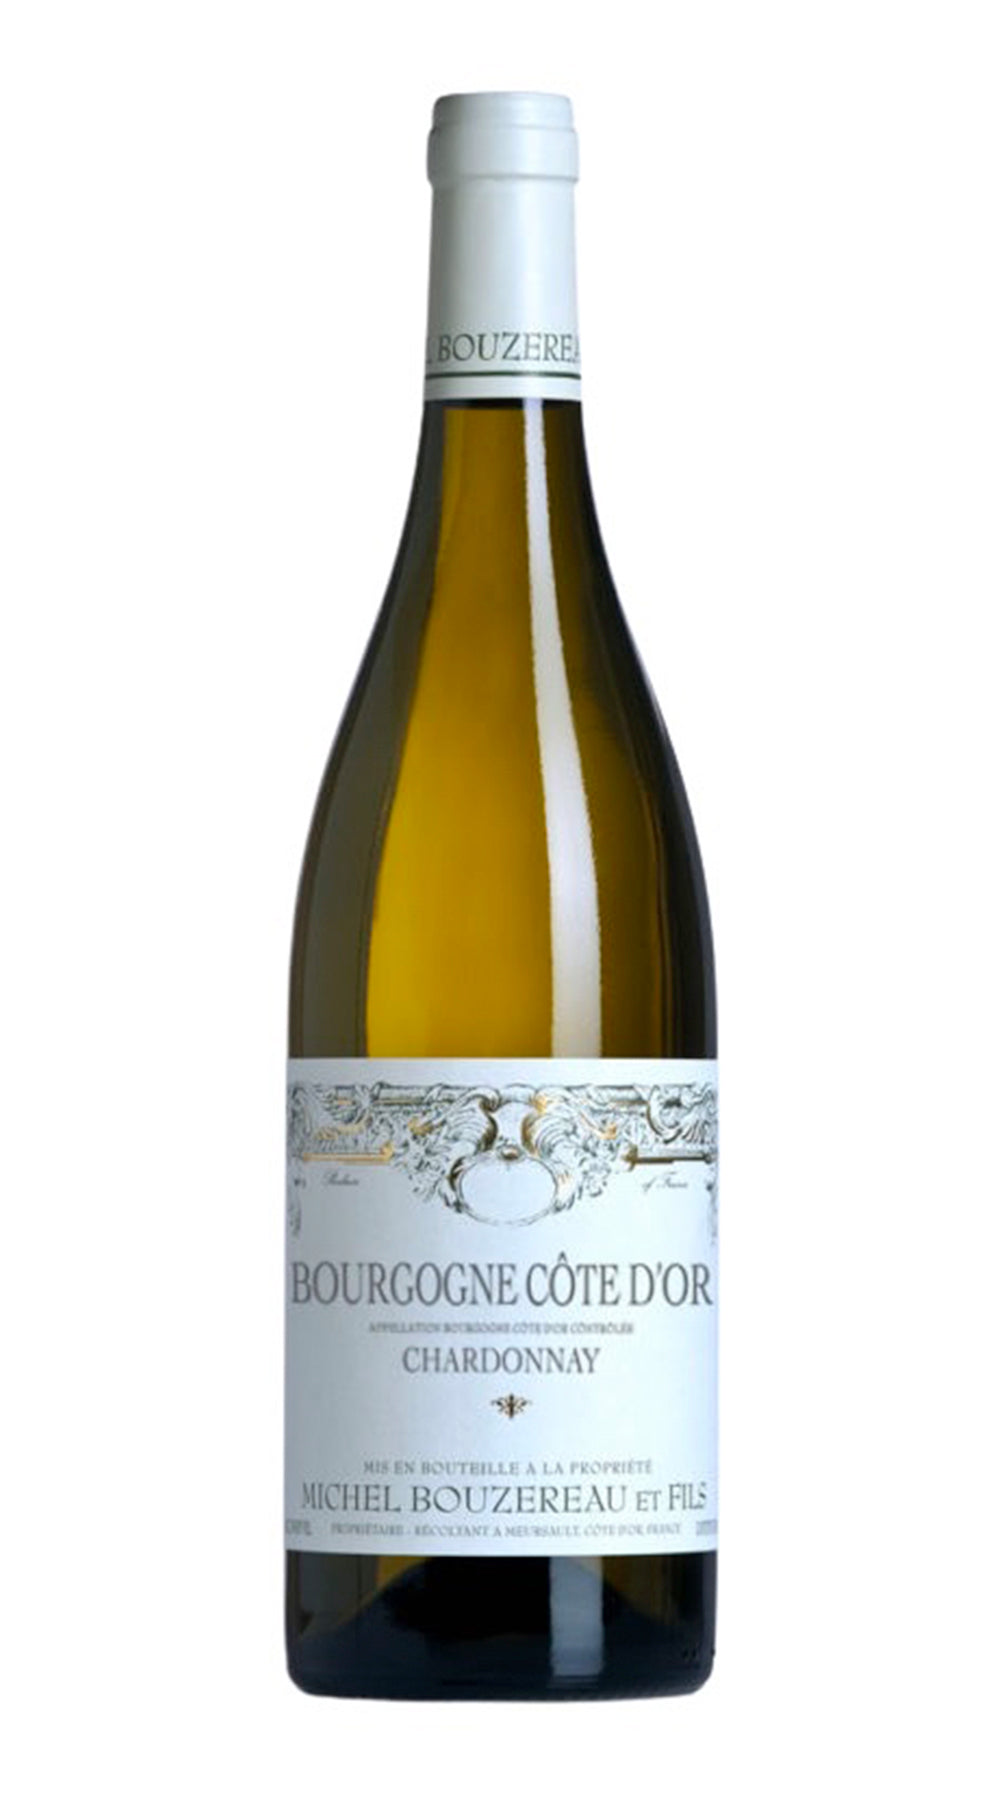 Domaine Michel Bouzereau et Fils Bourgogne Cote d 'Or